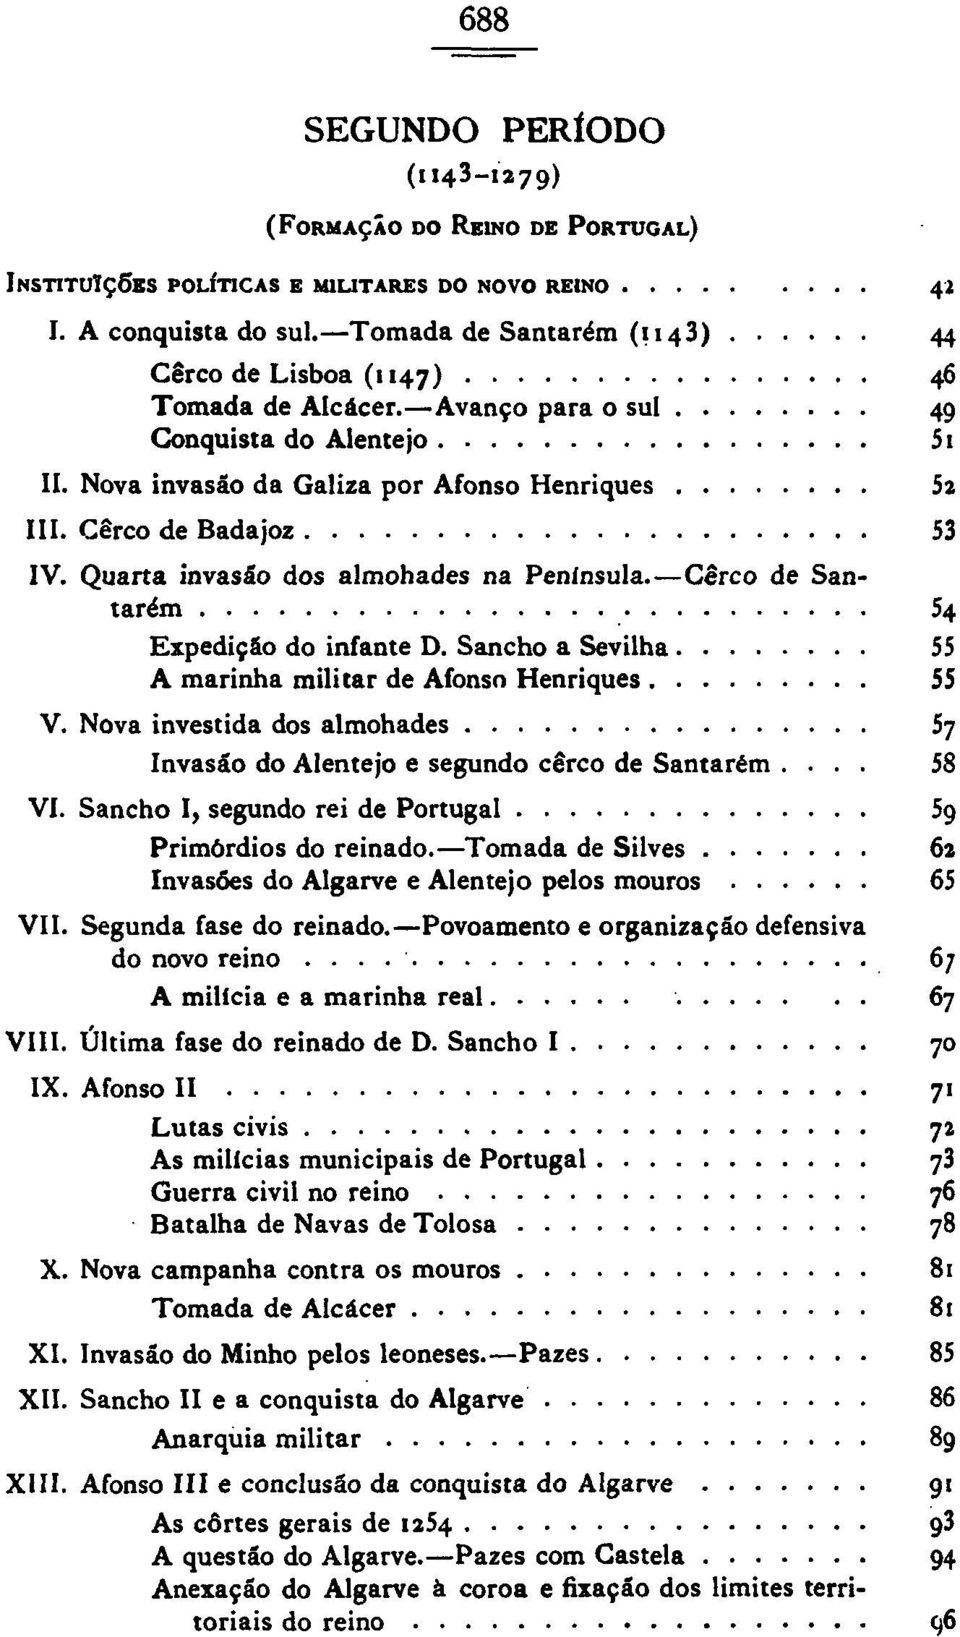 Quarta invasão dos almohades na Península. Cerco de Santarém 54 Expedição do infante D. Sancho a Sevilha 55 A marinha militar de Afonso Henriques 55 V.